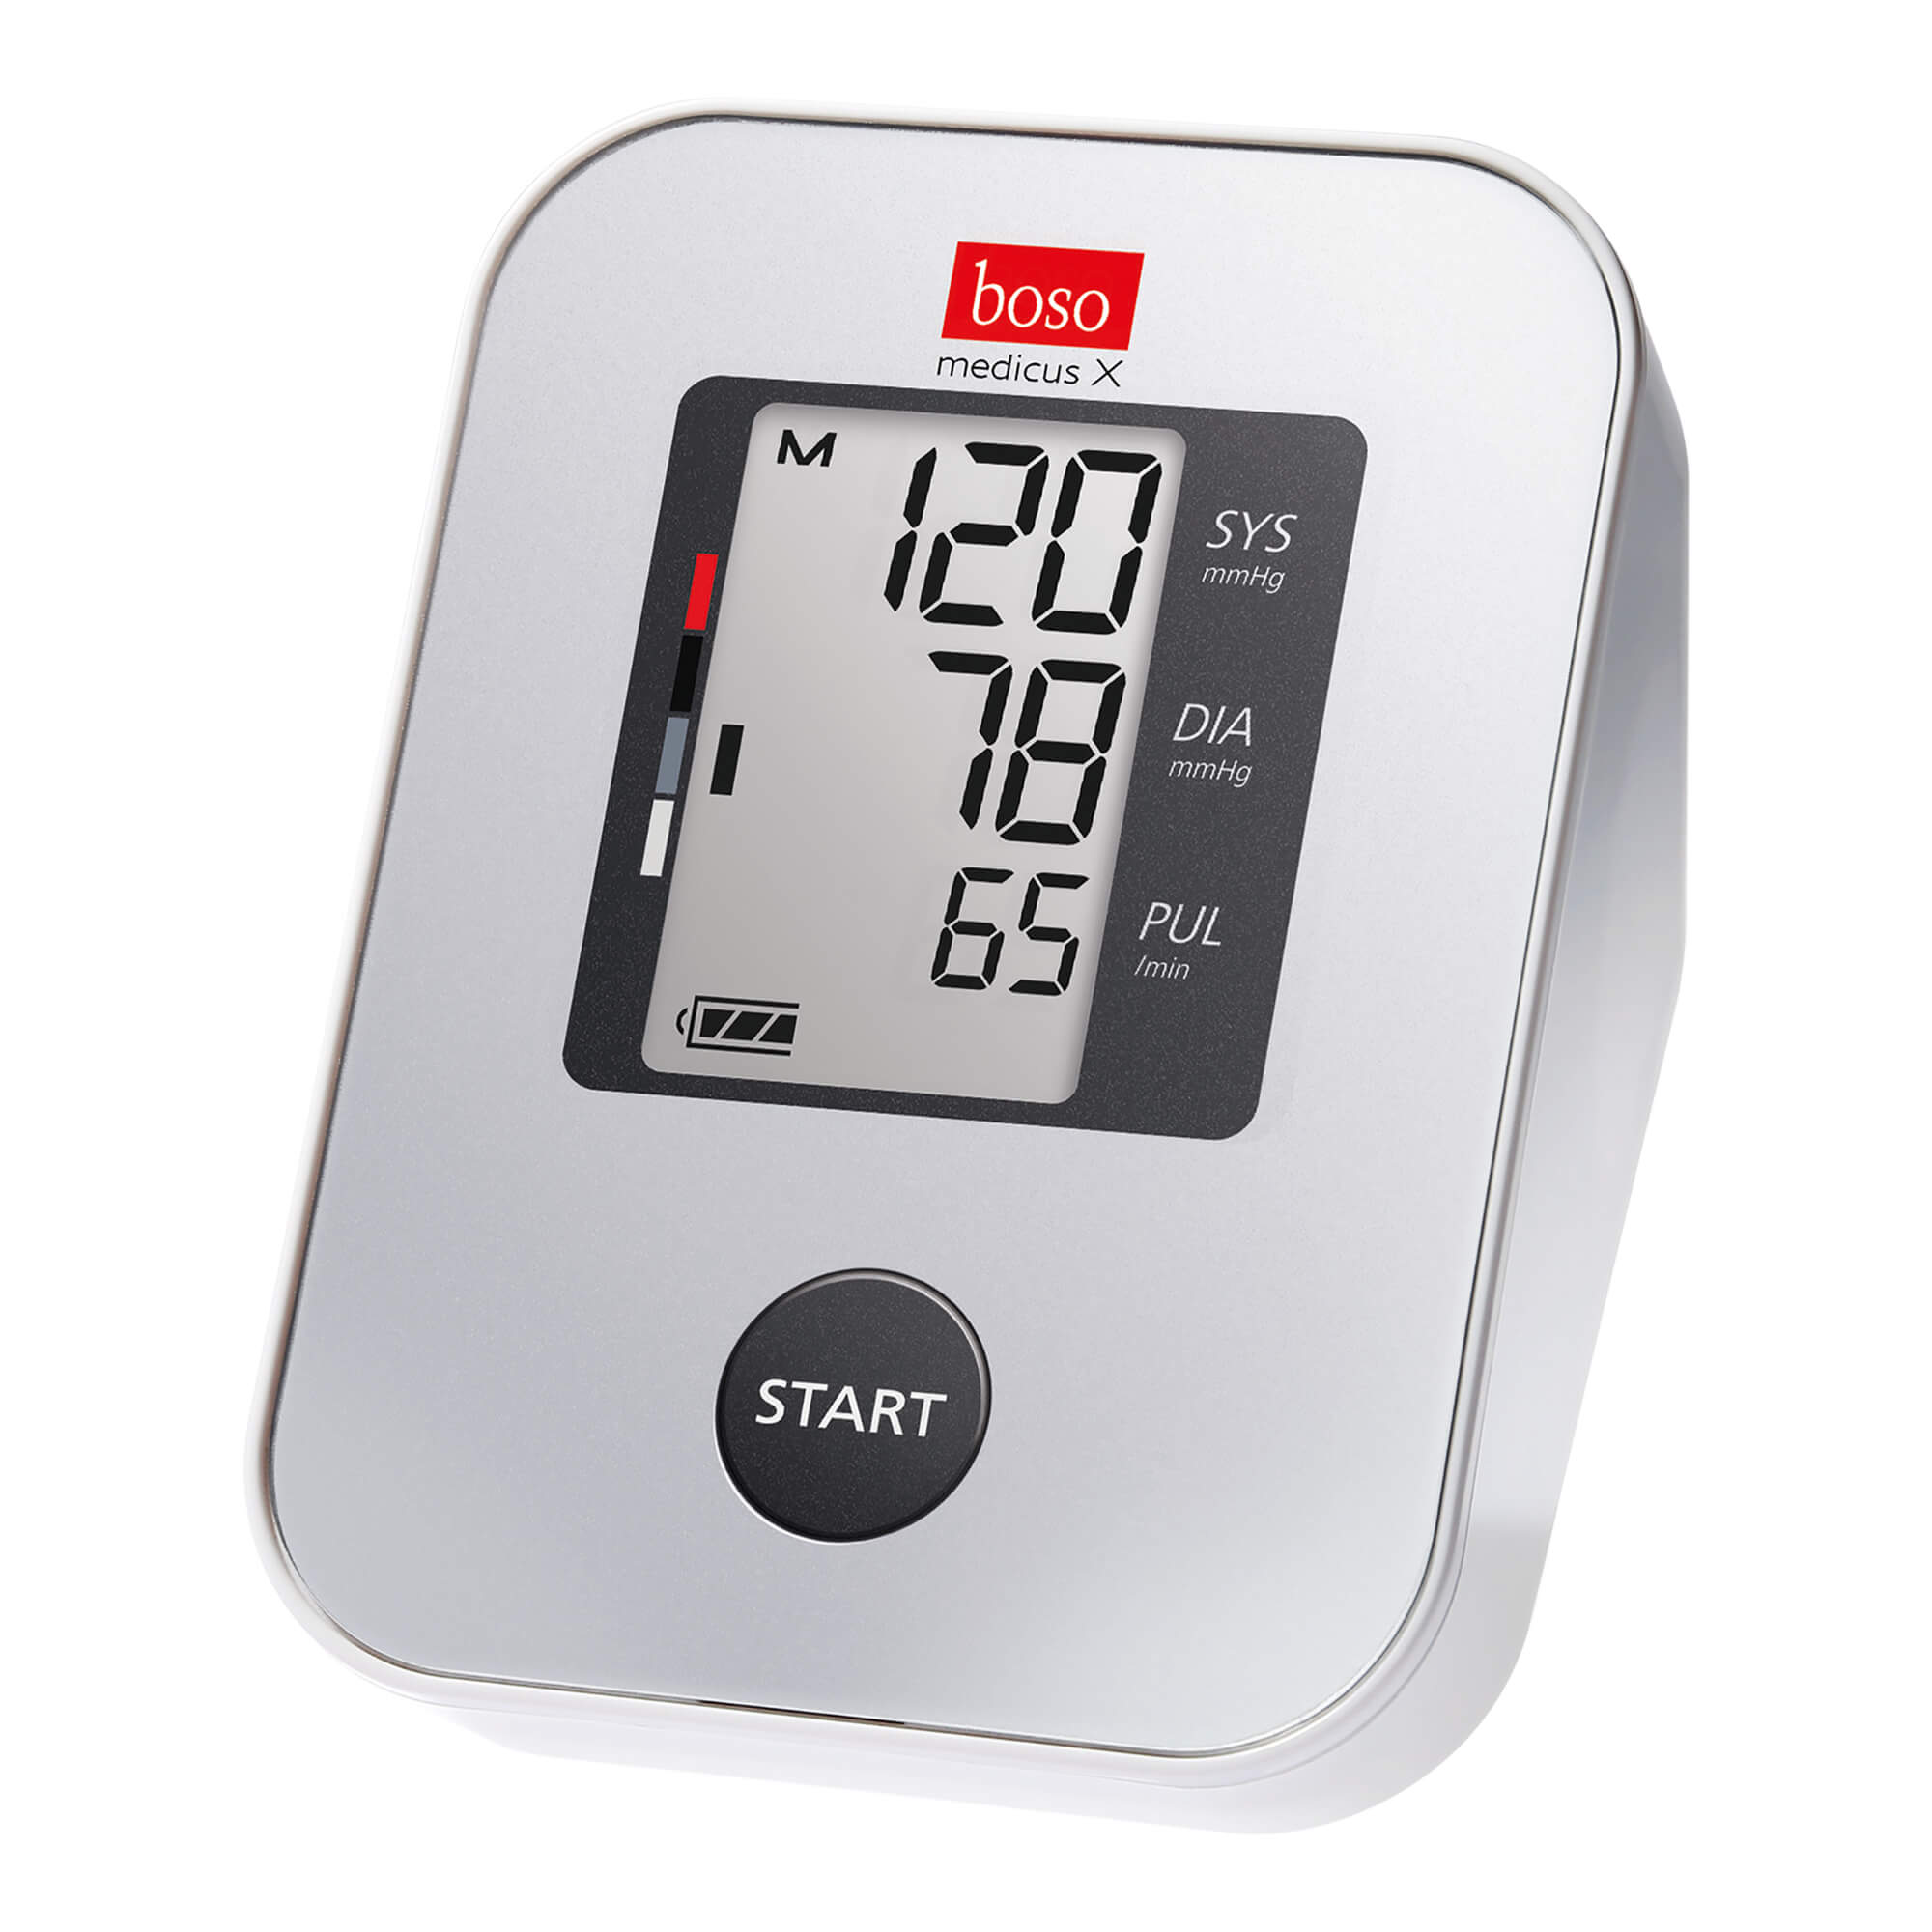 Oberarm-Blutdruckmessgerät. Inklusive Speicher für 30 Messwerte für 14-Tage-Profil.